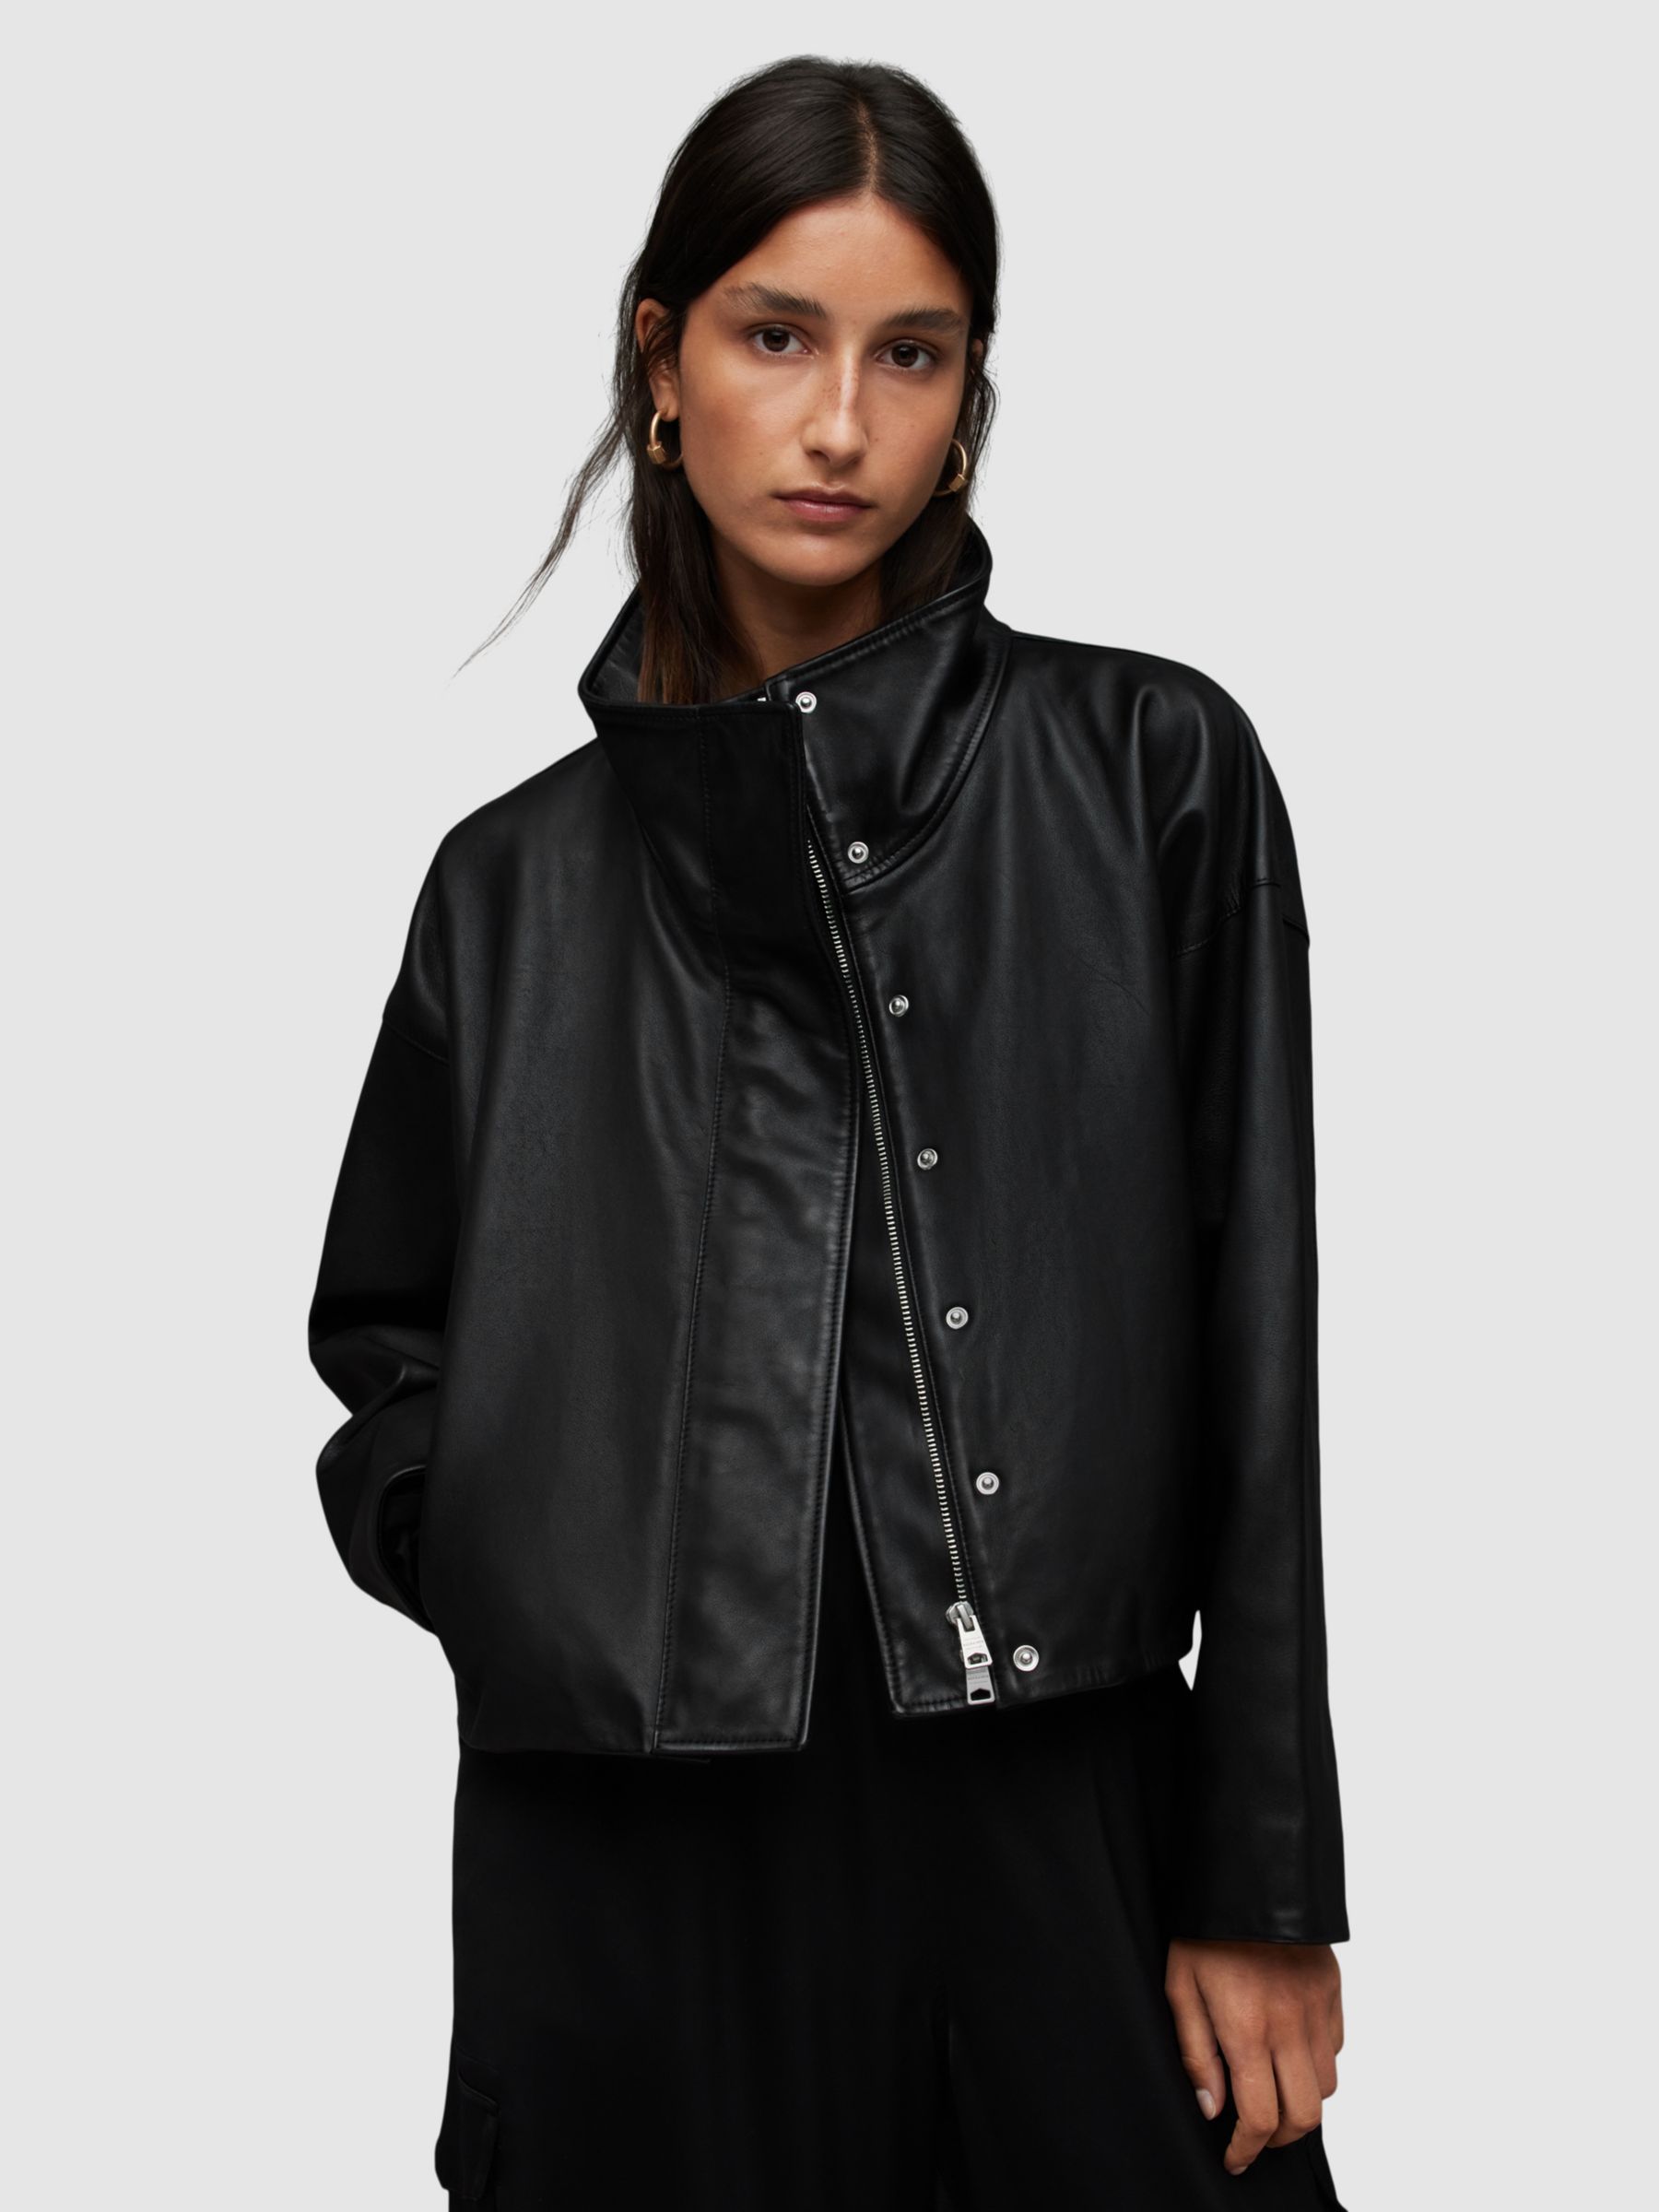 AllSaints Ryder Leather Jacket, Black at John Lewis & Partners